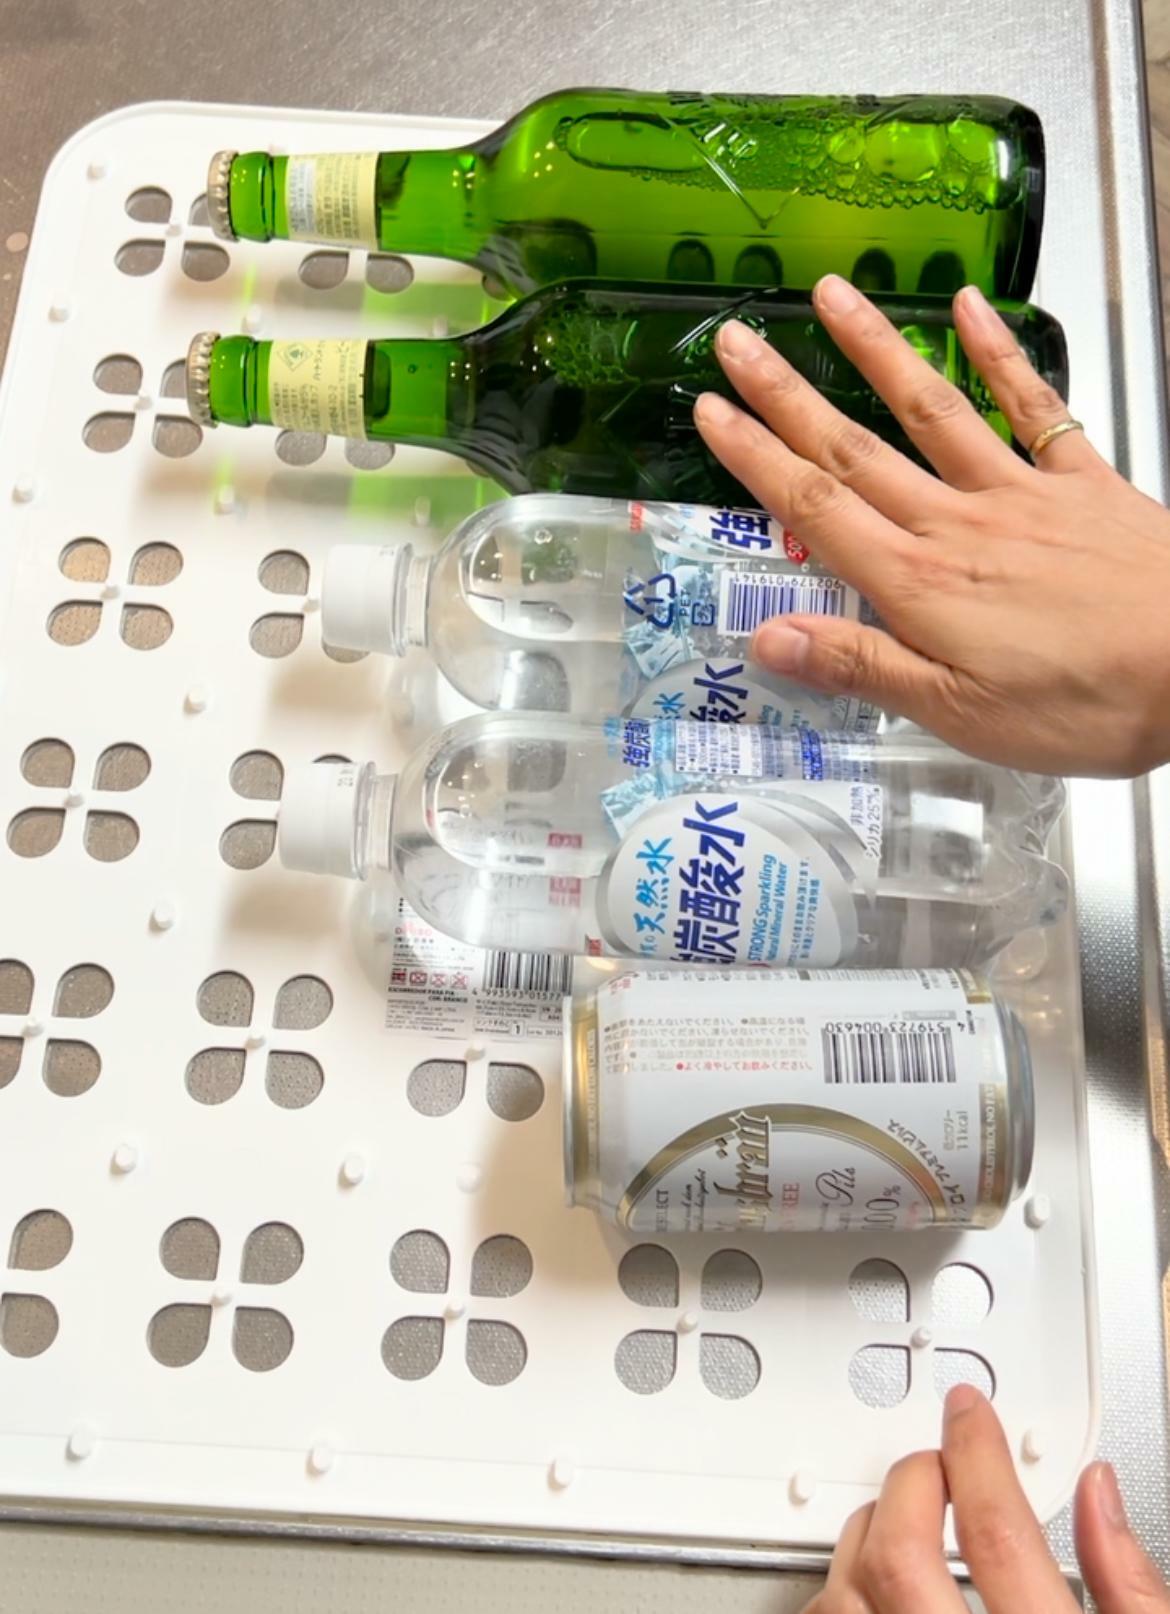 わかりやすいように冷蔵庫の外でボトルを並べている様子